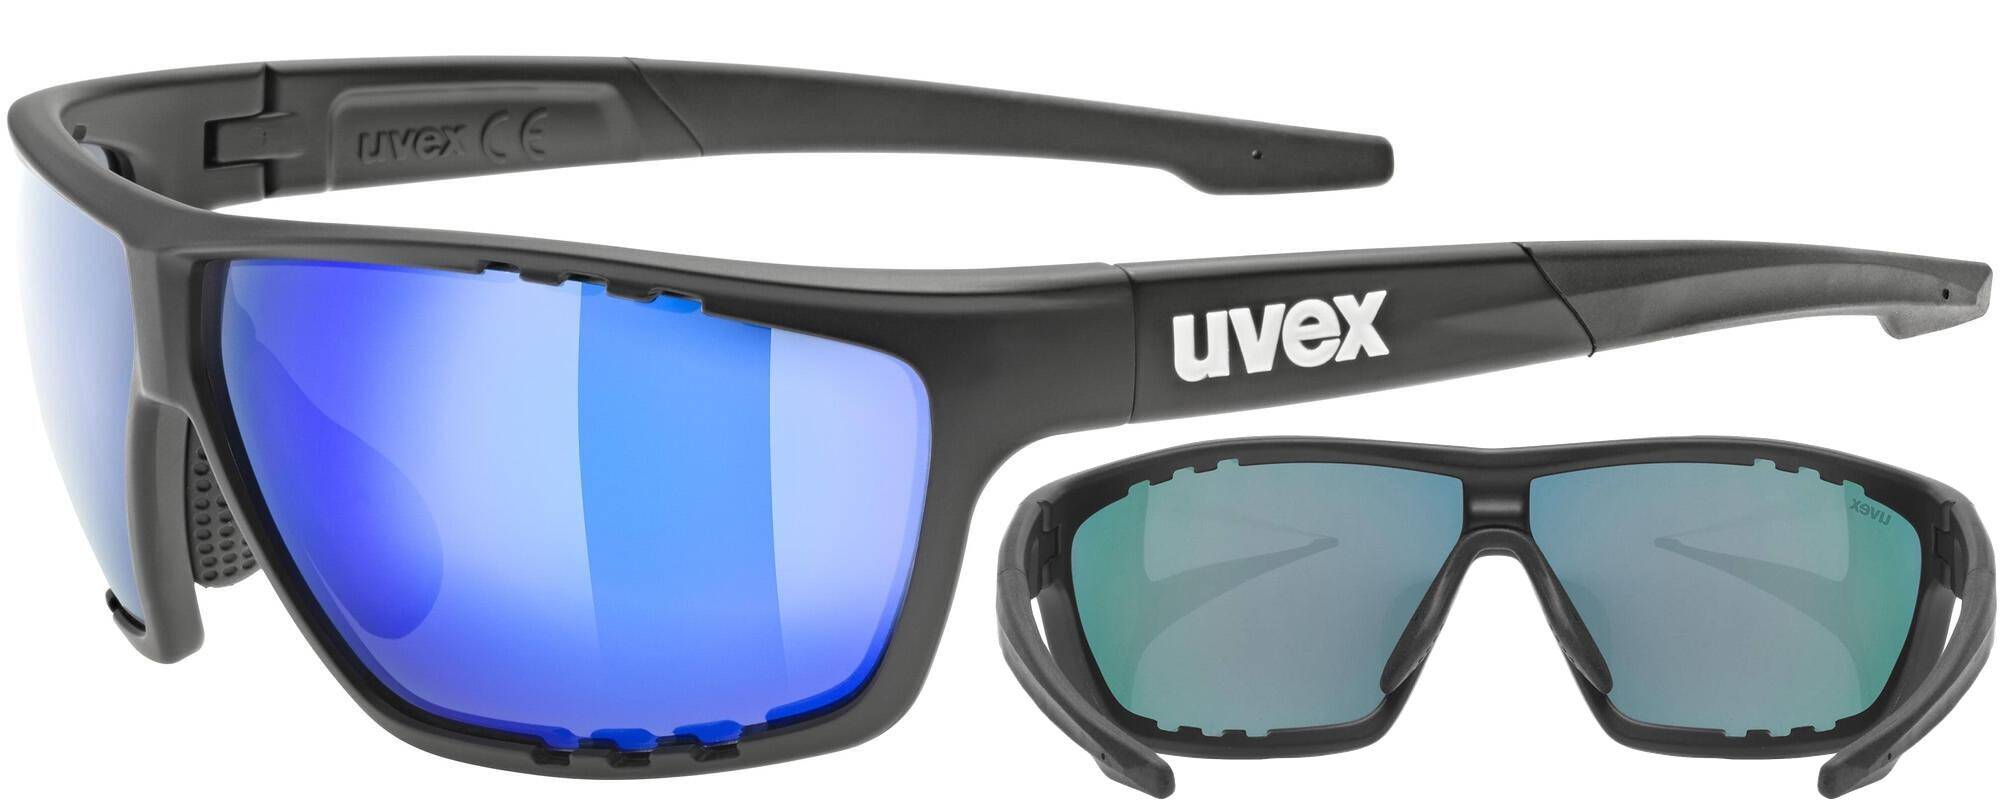 Okulary Uvex Sportstyle 706 czarne